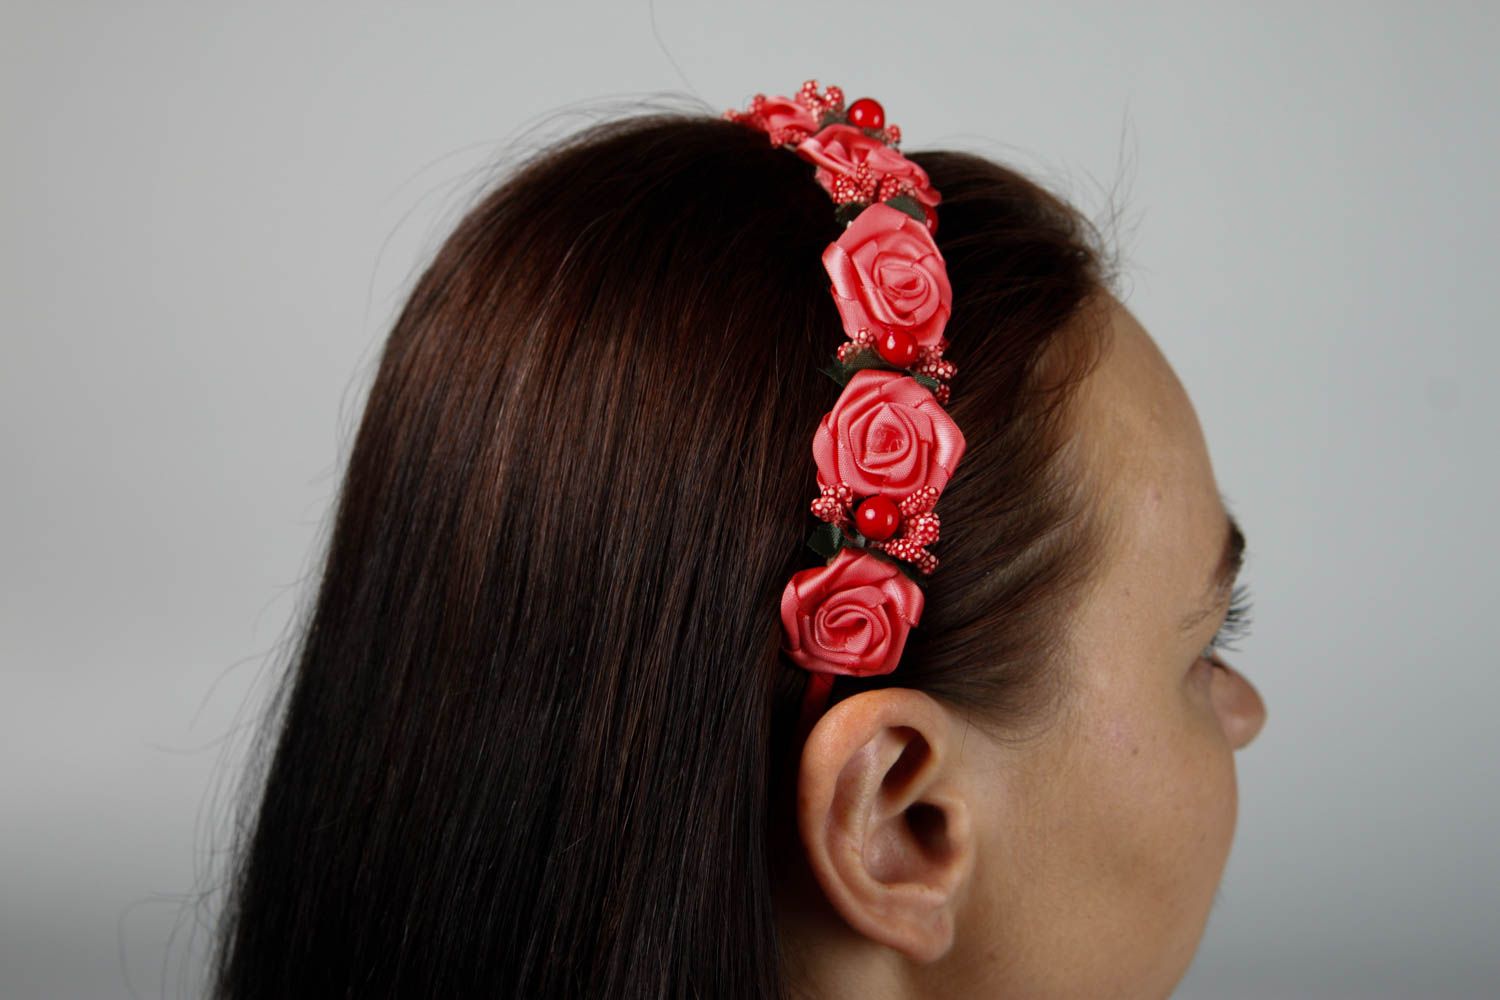 Аксессуар для волос ручной работы красный обруч на голову женский аксессуар фото 2